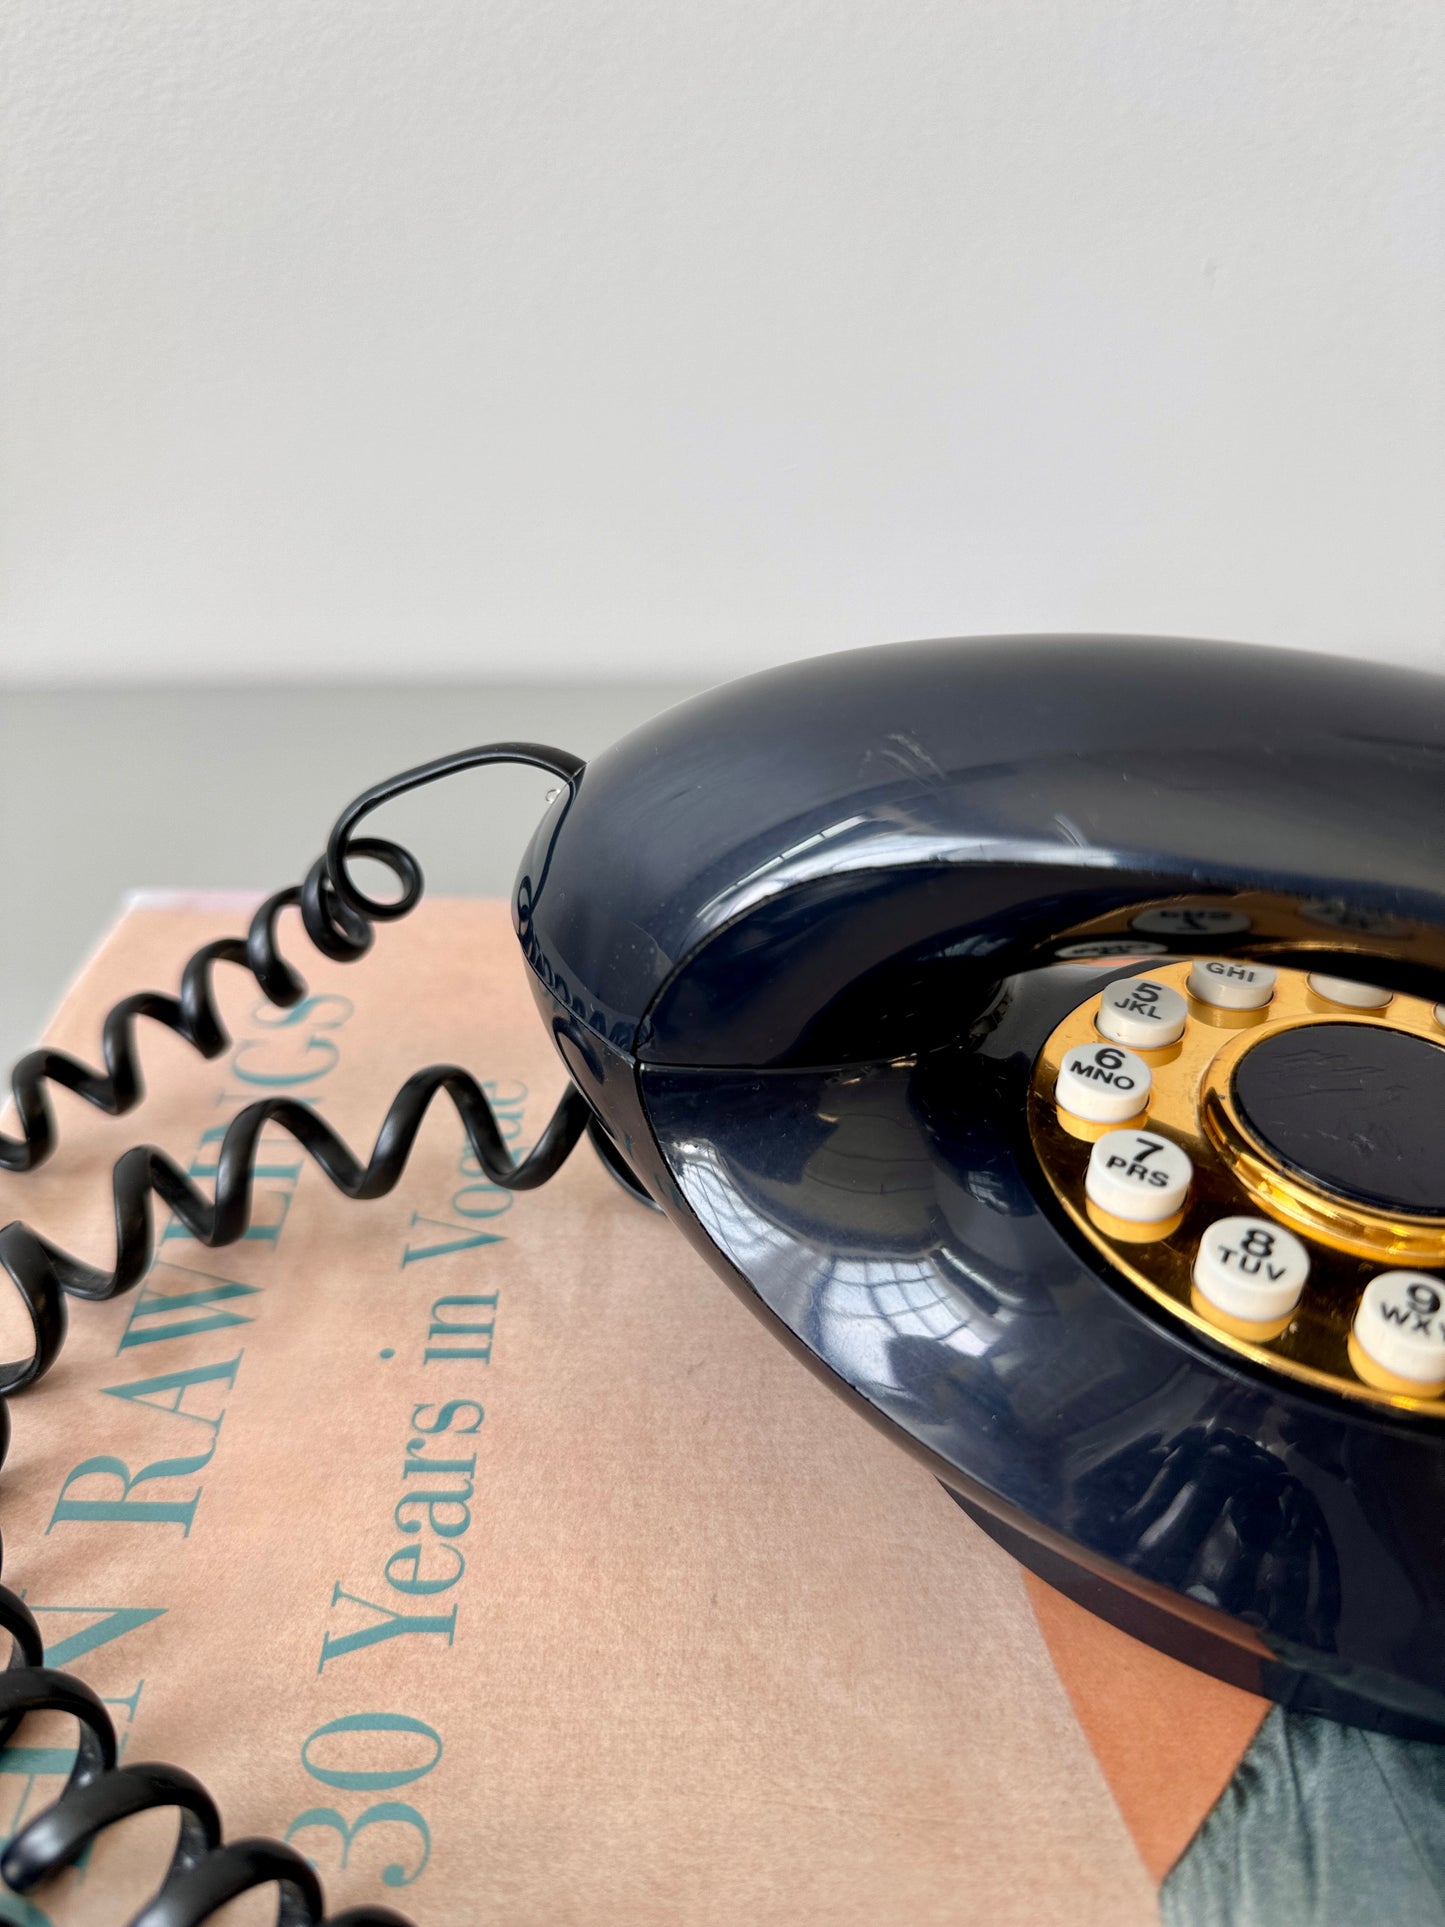 Vintage Push Button "Genie" Landline Phone